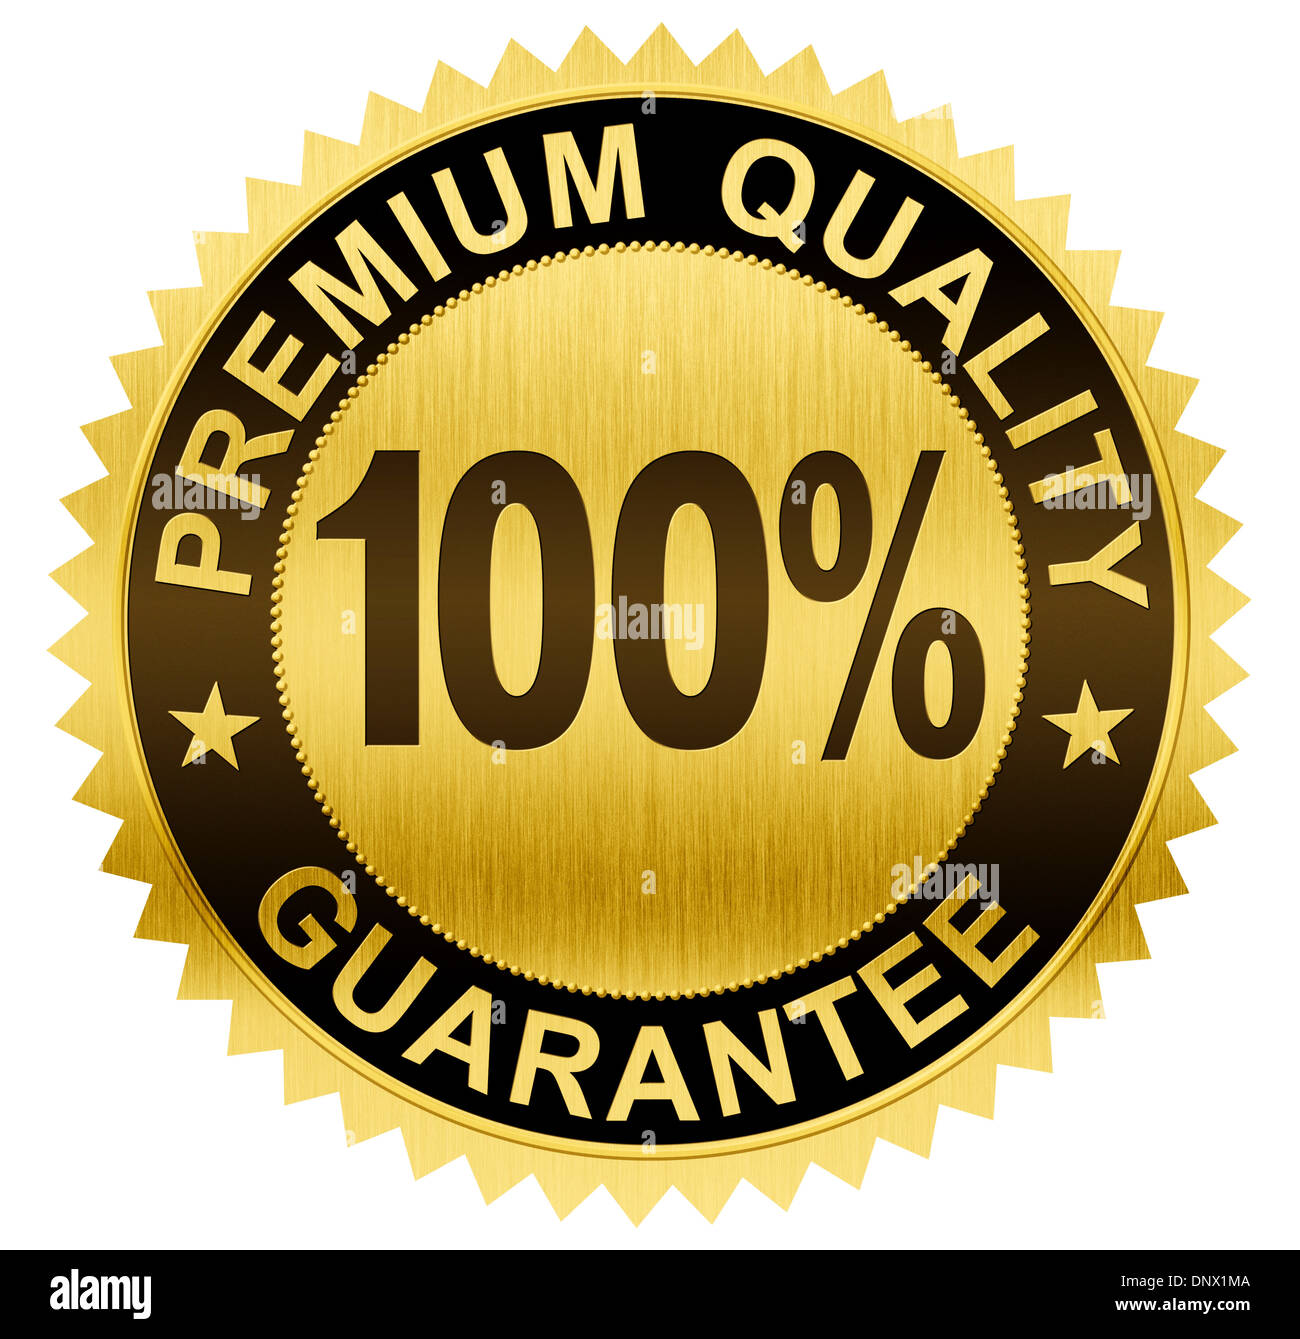 Calidad Premium, garantizado el sello de oro de la medalla con trazado de recorte incluido Foto de stock